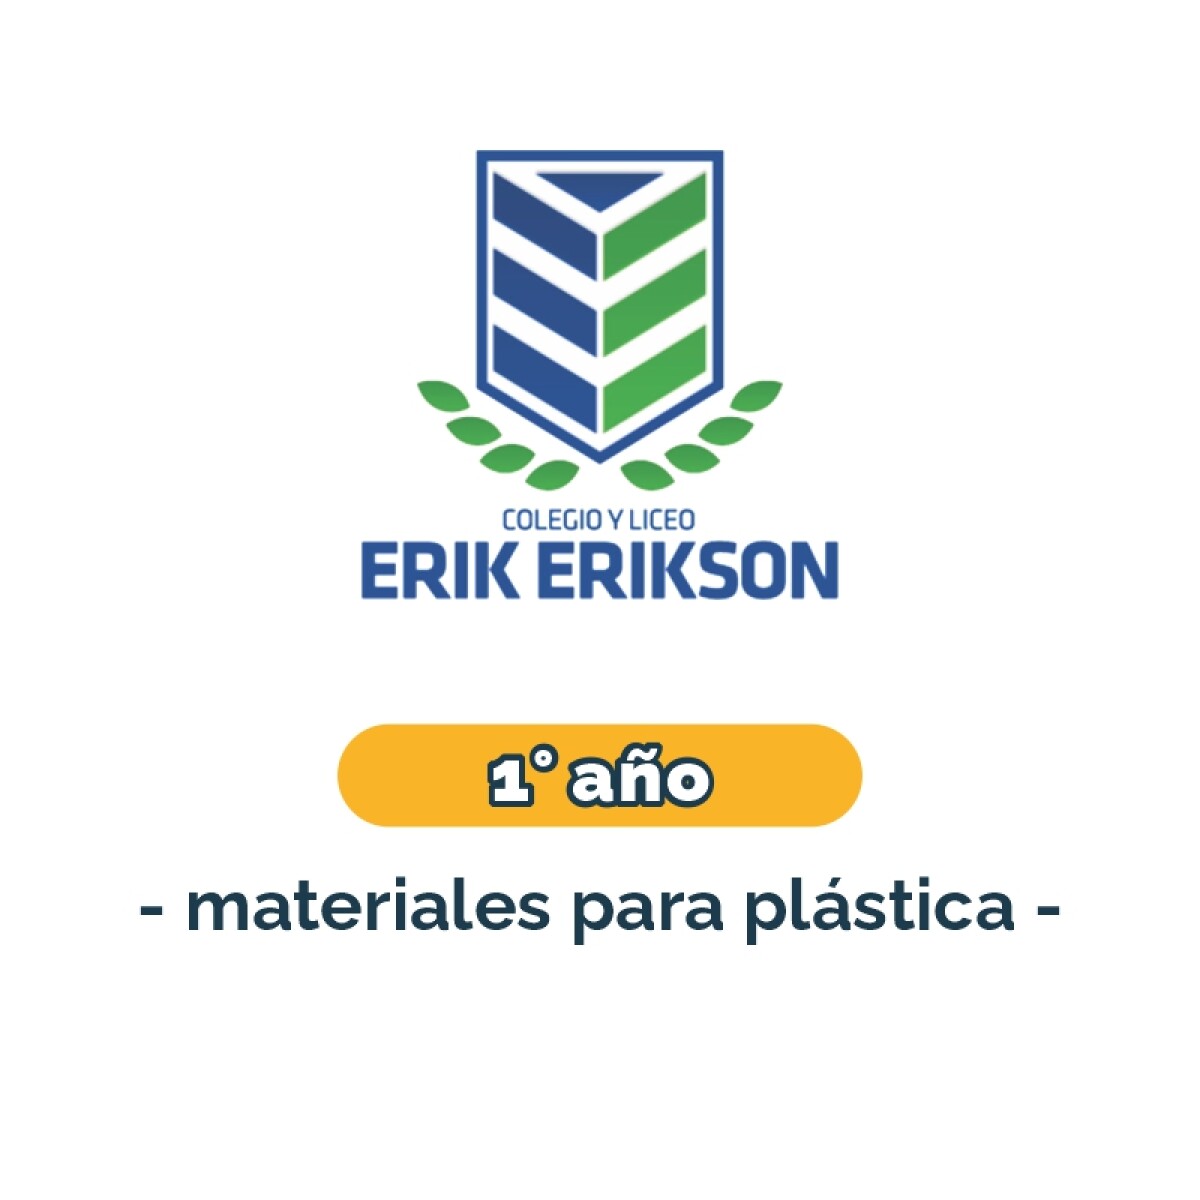 Materiales para plástica - Primaria 1° año Erik Erikson 